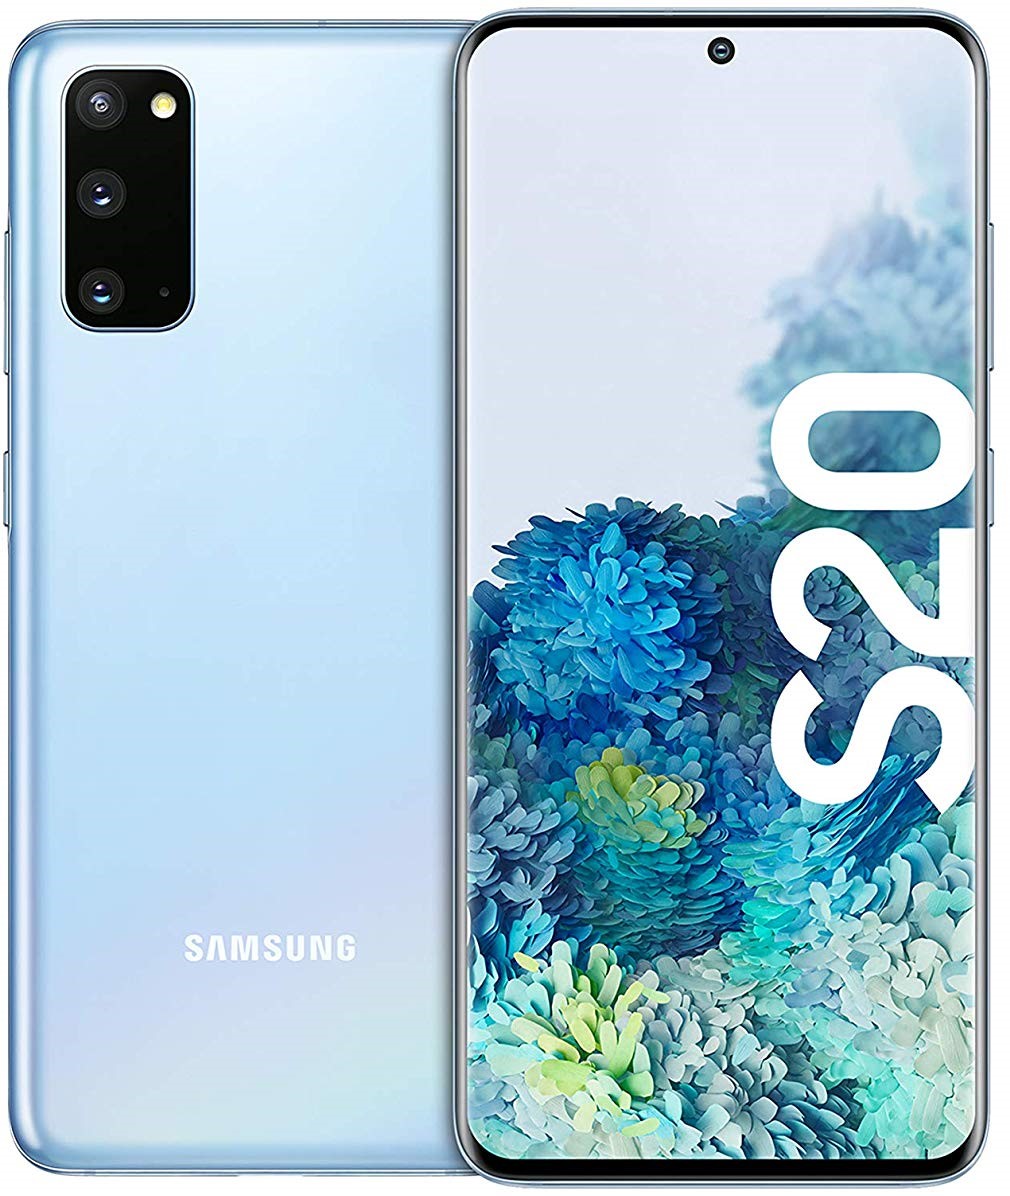 Samsung Galaxy S20 128GB Dual-SIM Cloud Blue